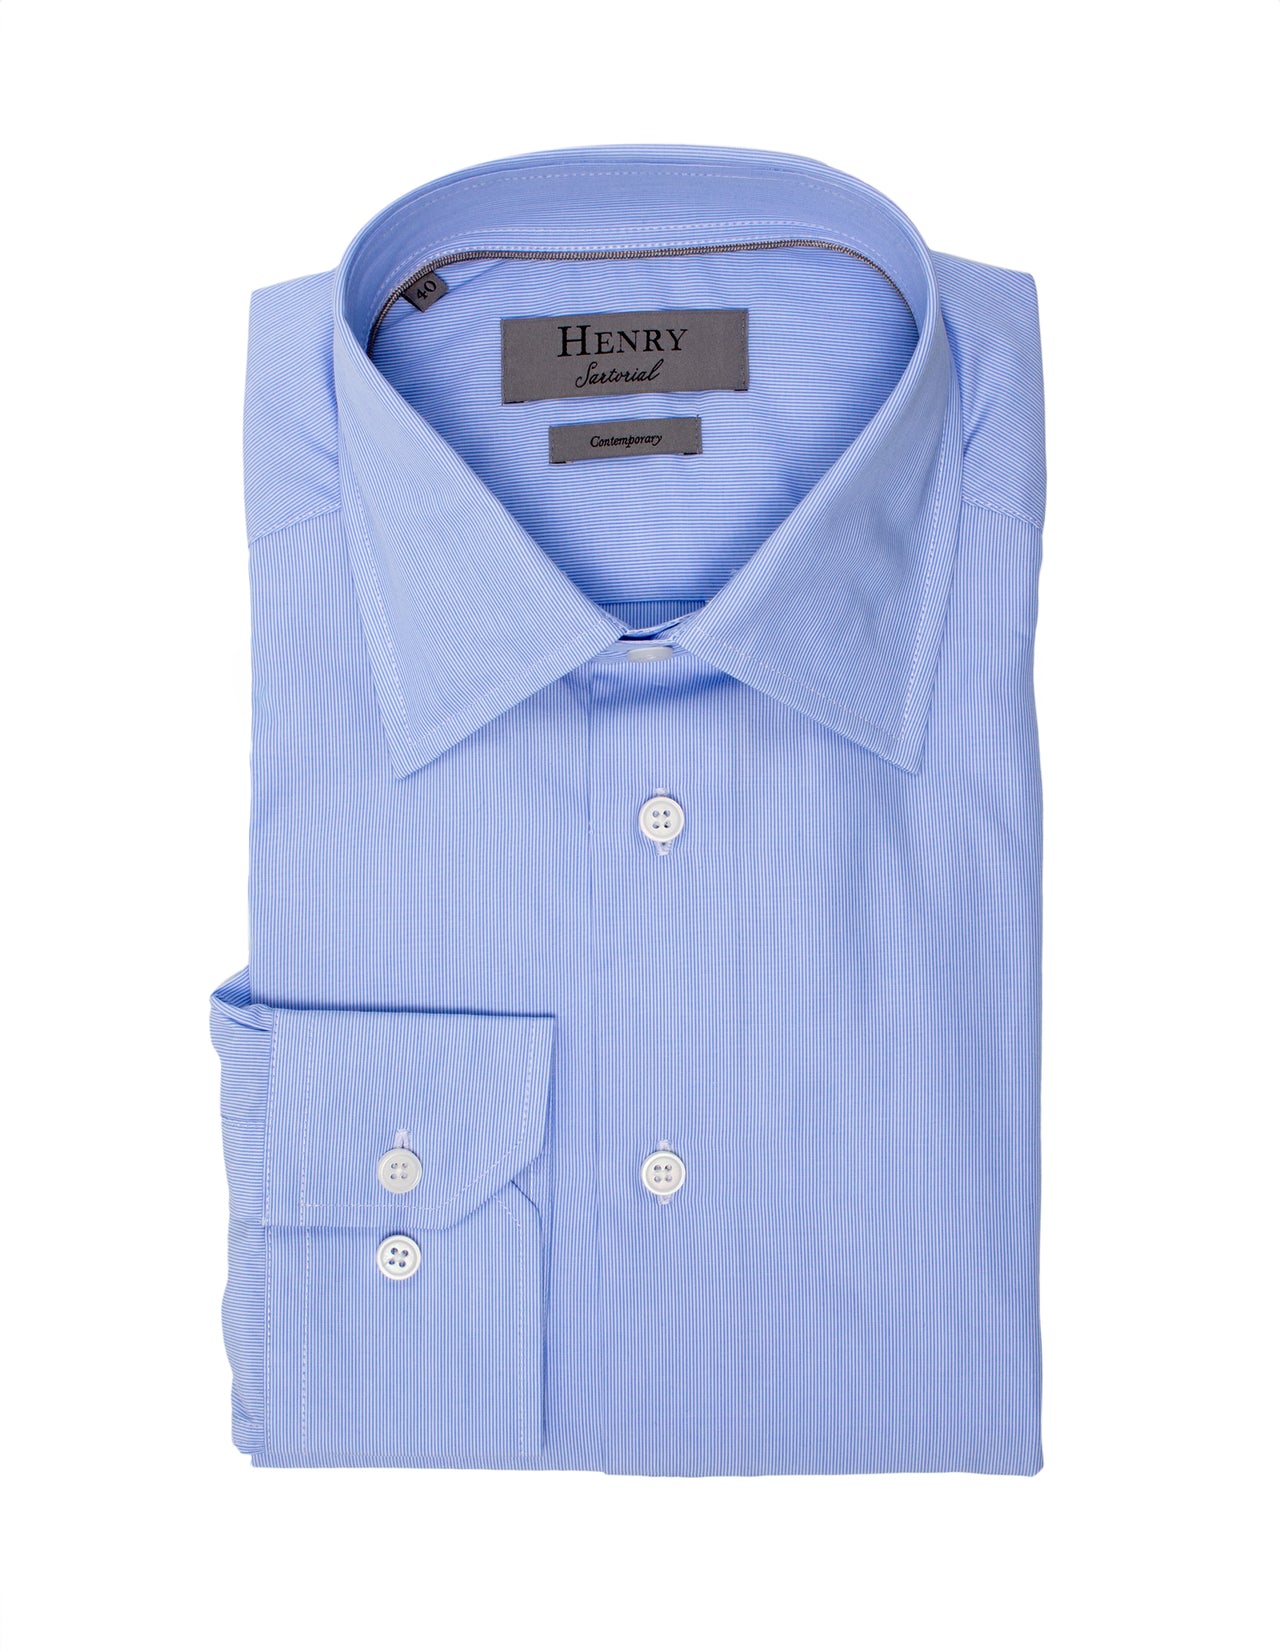 HENRY SARTORIAL Contemporary Fit Fine Stripe Shirt BLUE